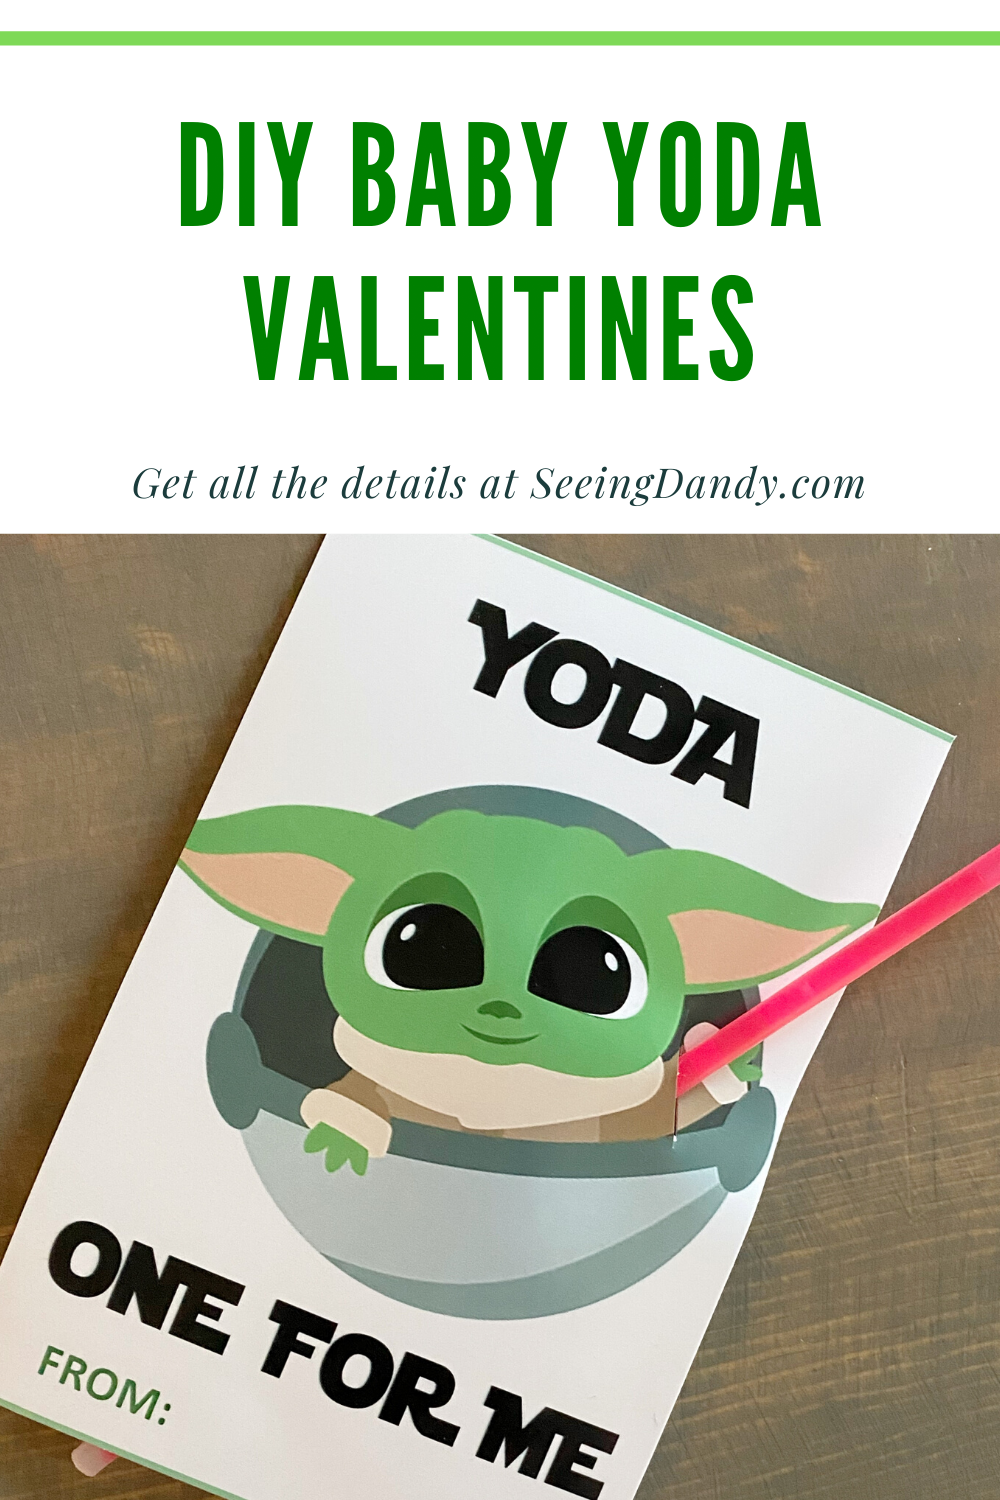 DIY Baby Yoda Valentines